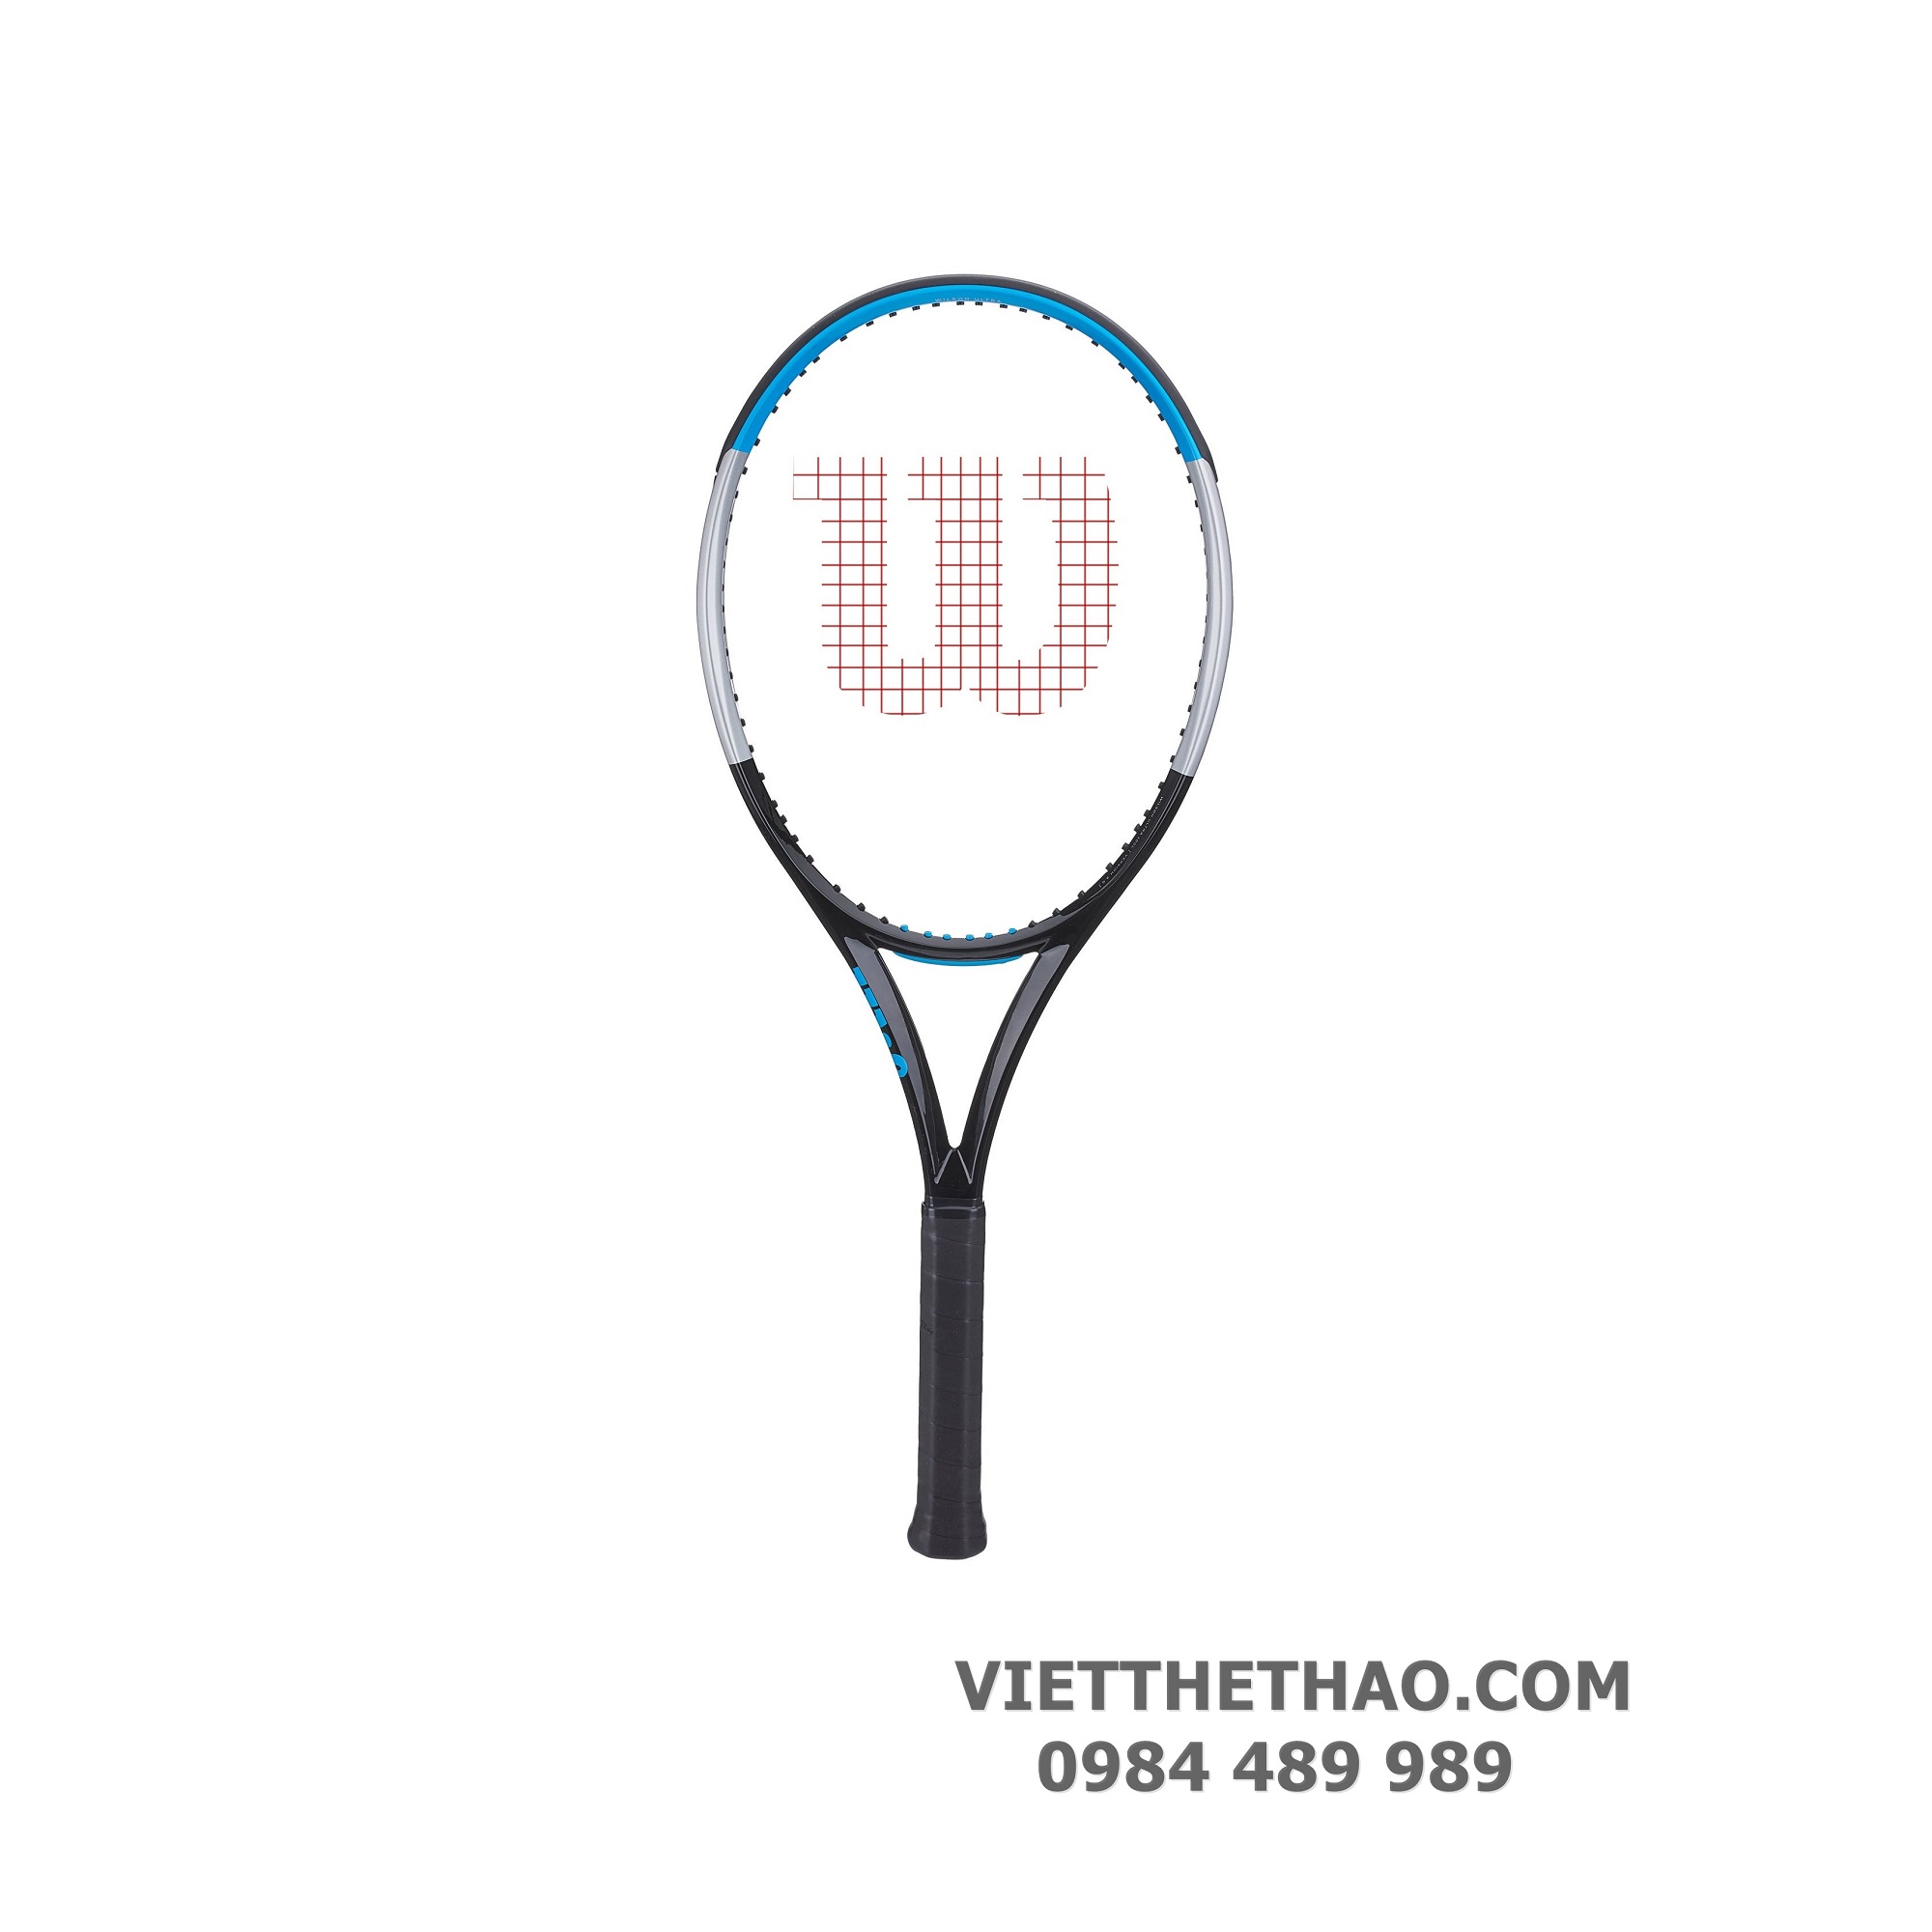 Địa chỉ mua vợt tennis Wilson chính hãng tại Hà Nội